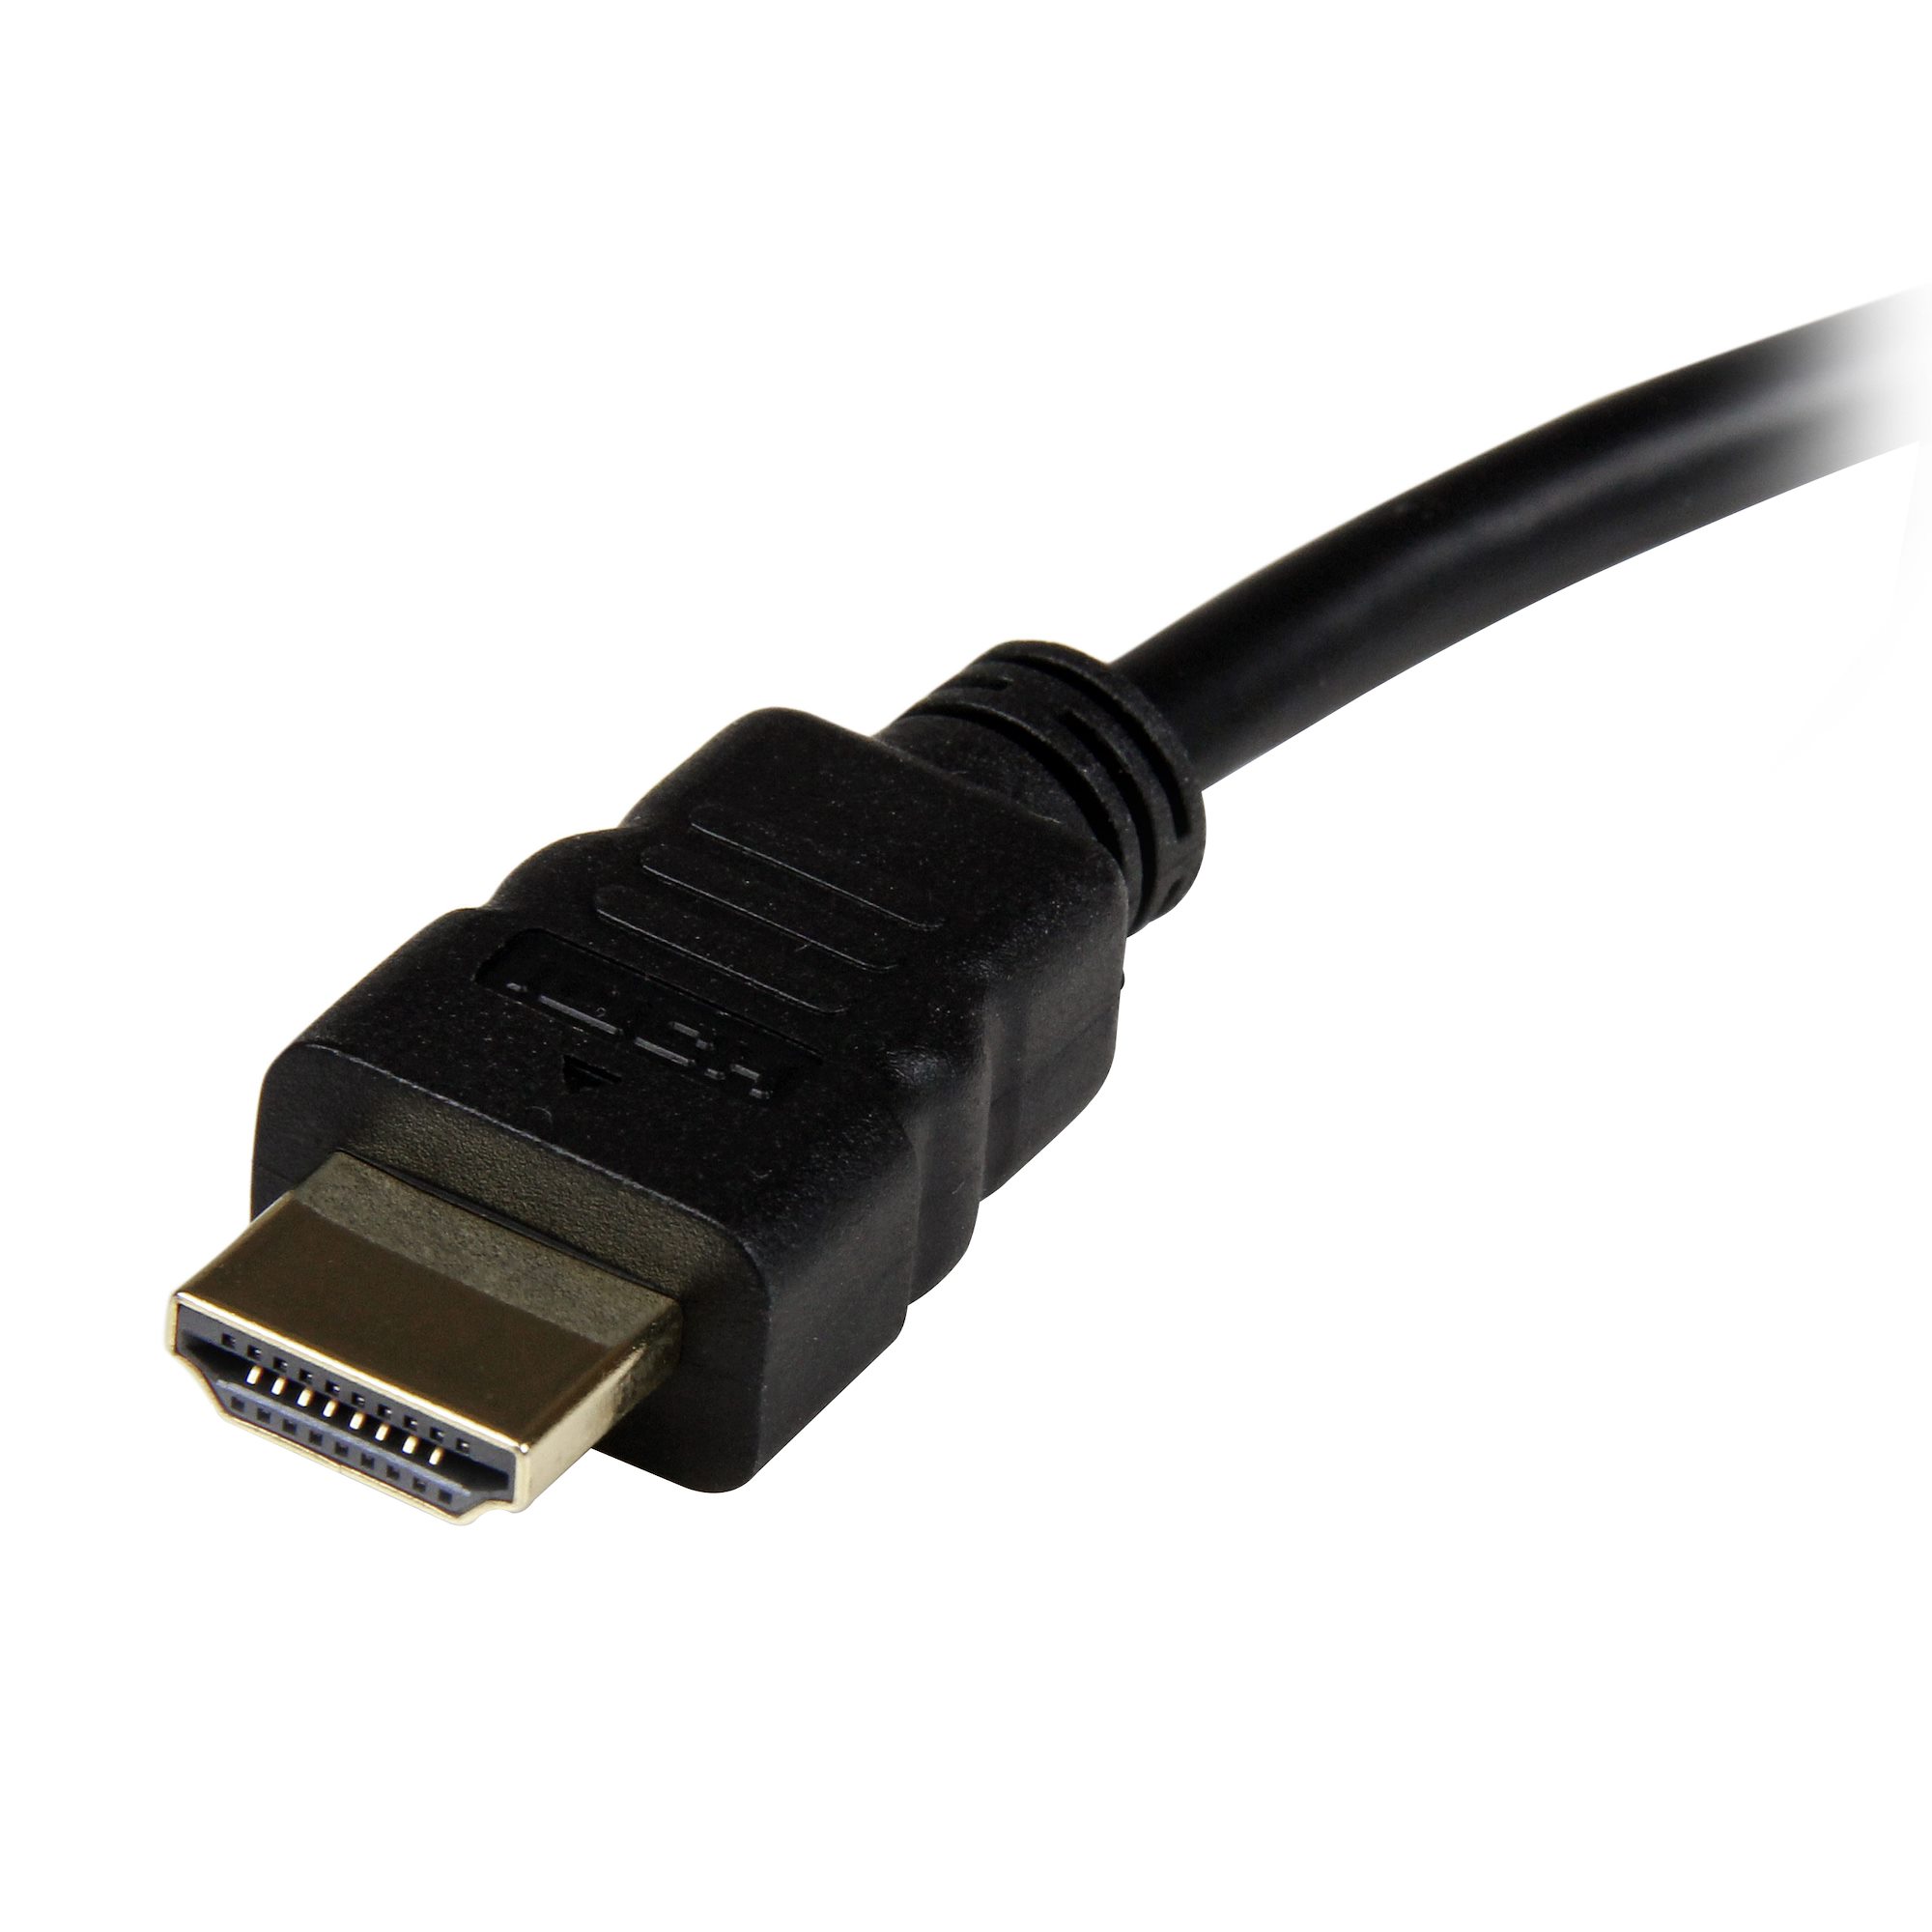 HDMI to VGA Adapter - HDMI & DVI Display Adapters